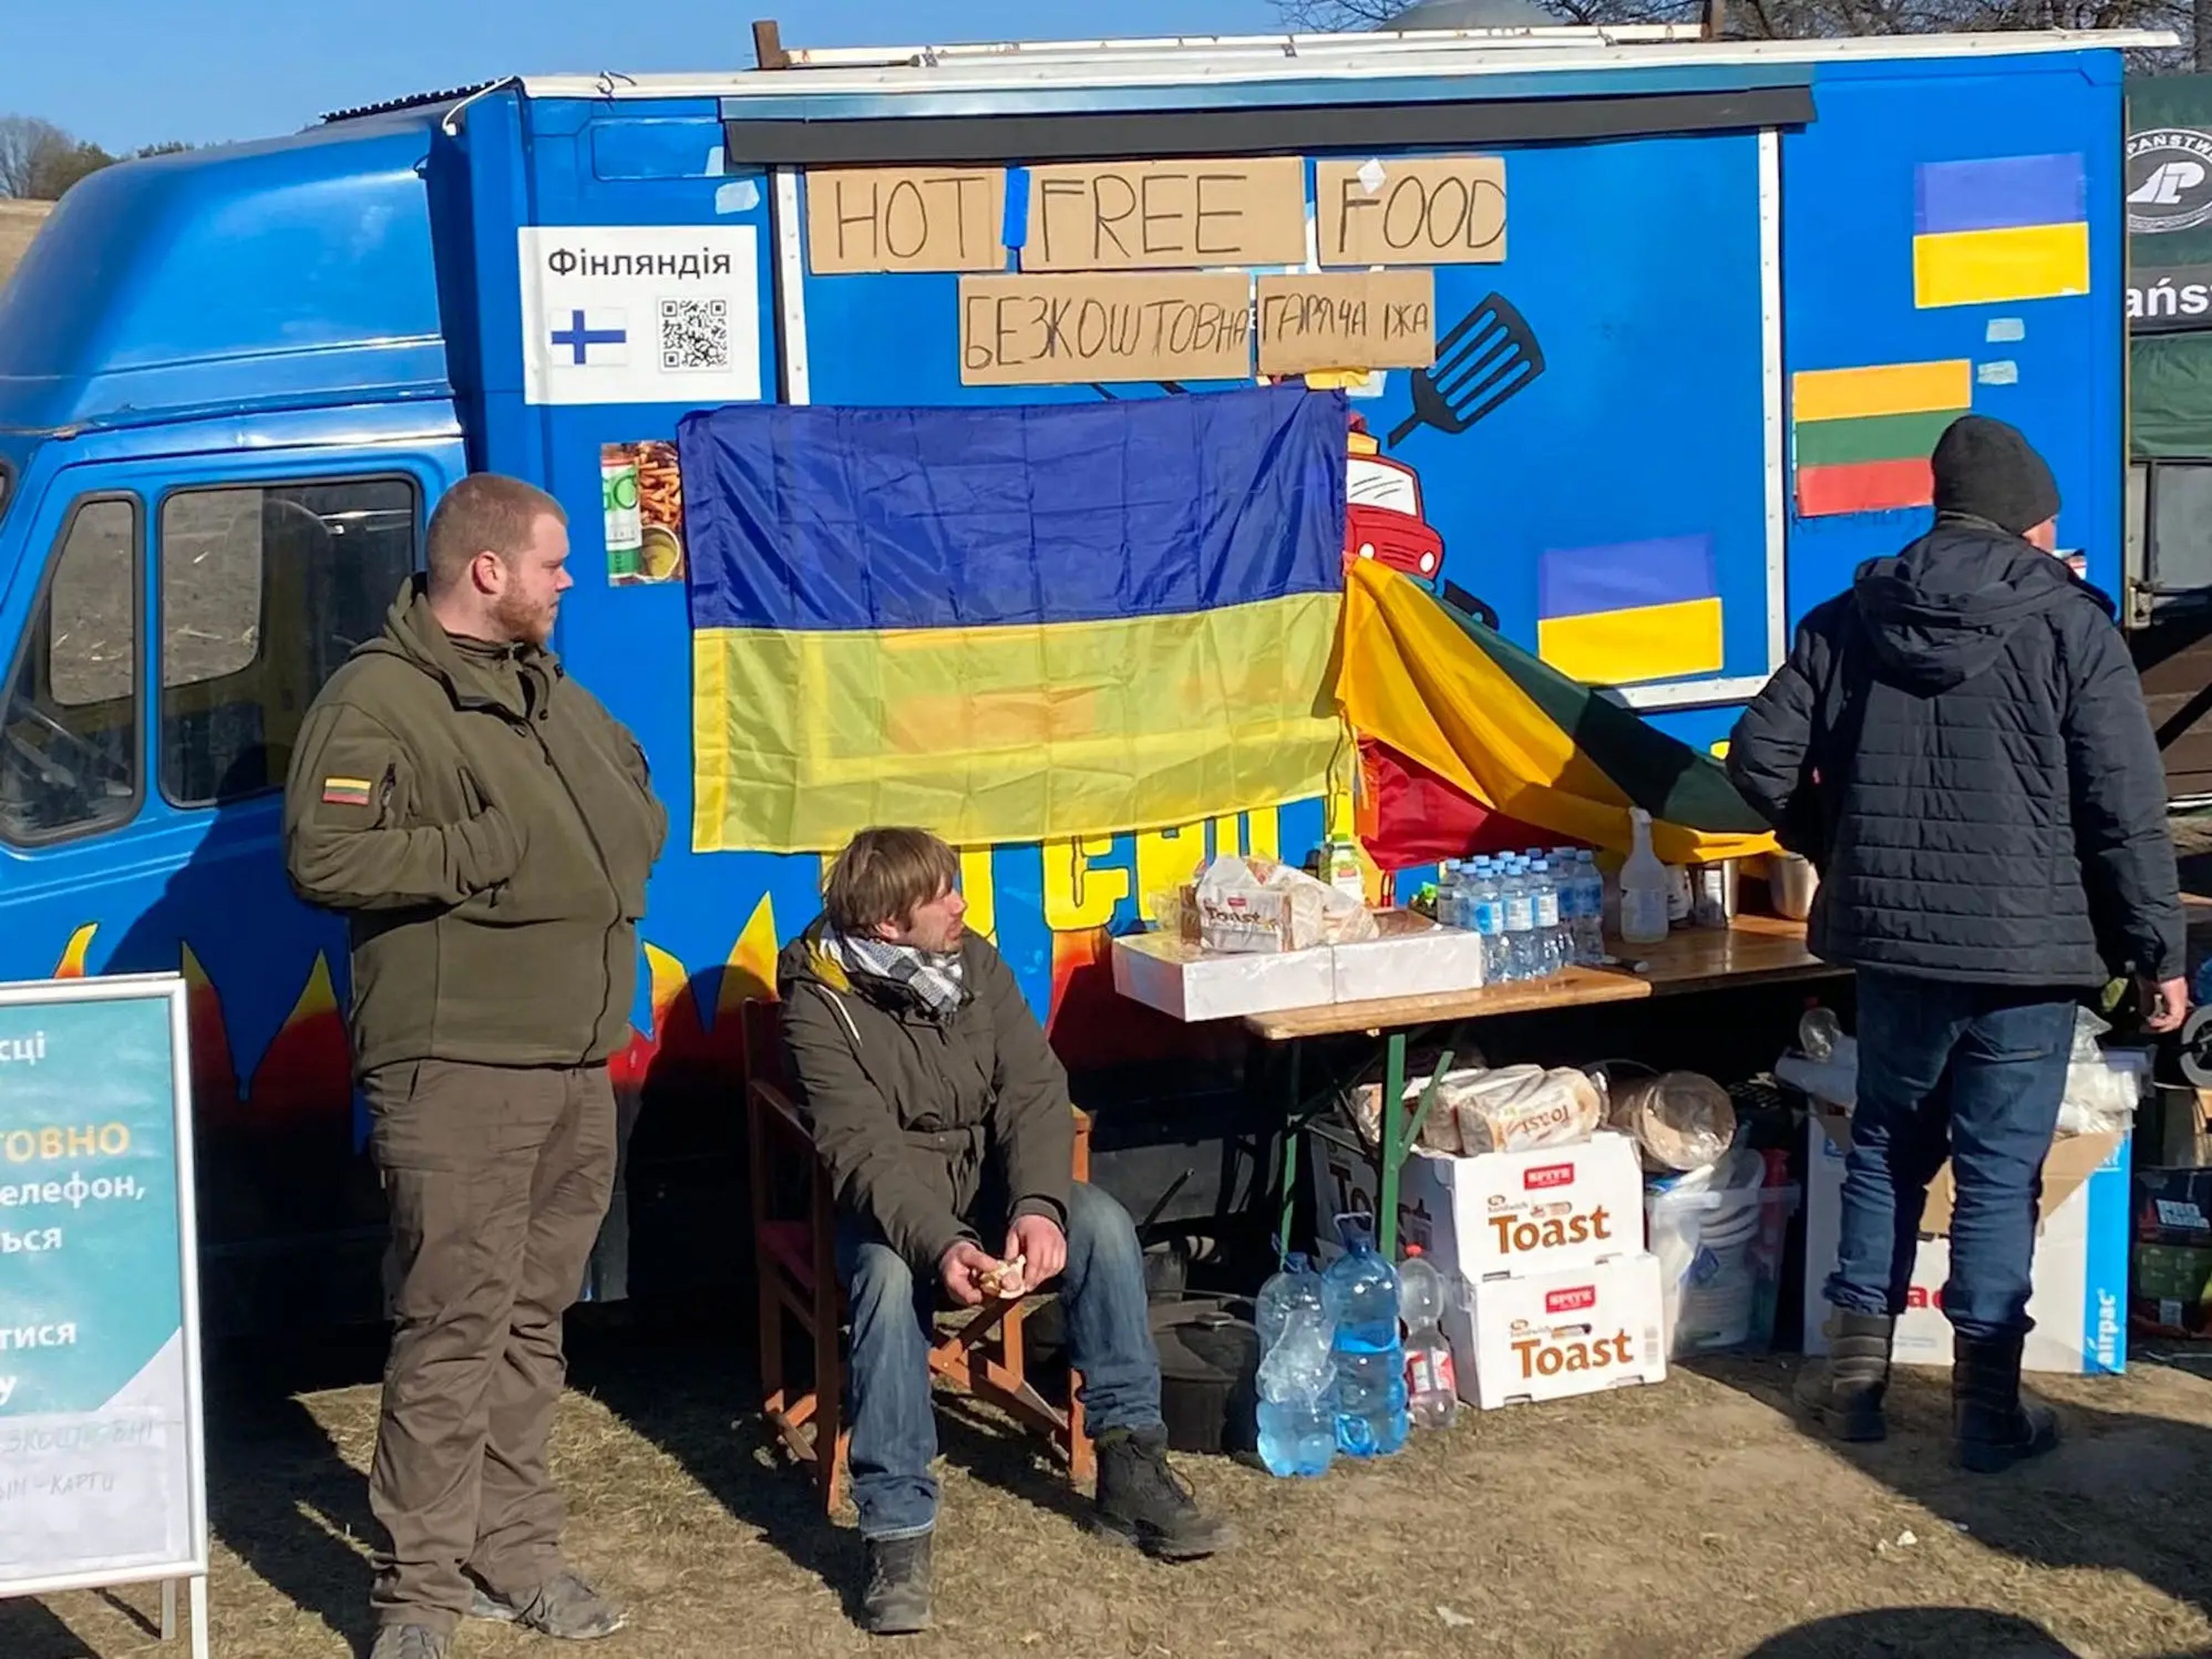 Comida gratuita para los refugiados ucranianos en el paso fronterizo de Rava-Ruska, en Hrebenne (Polonia).